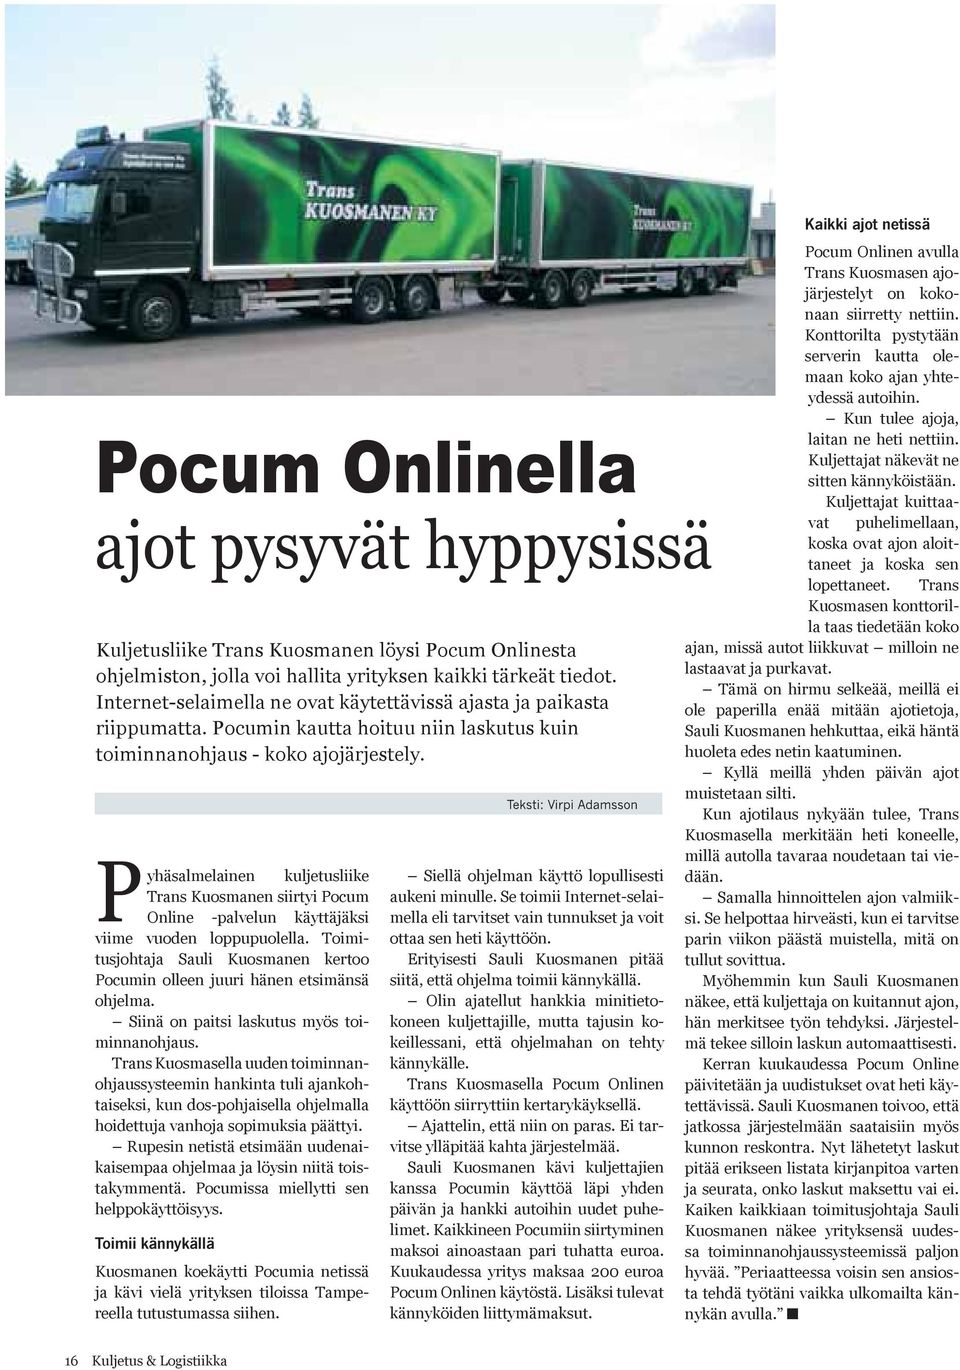 Pyhäsalmelainen kuljetusliike Trans Kuosmanen siirtyi Pocum Online -palvelun käyttäjäksi viime vuoden loppupuolella.